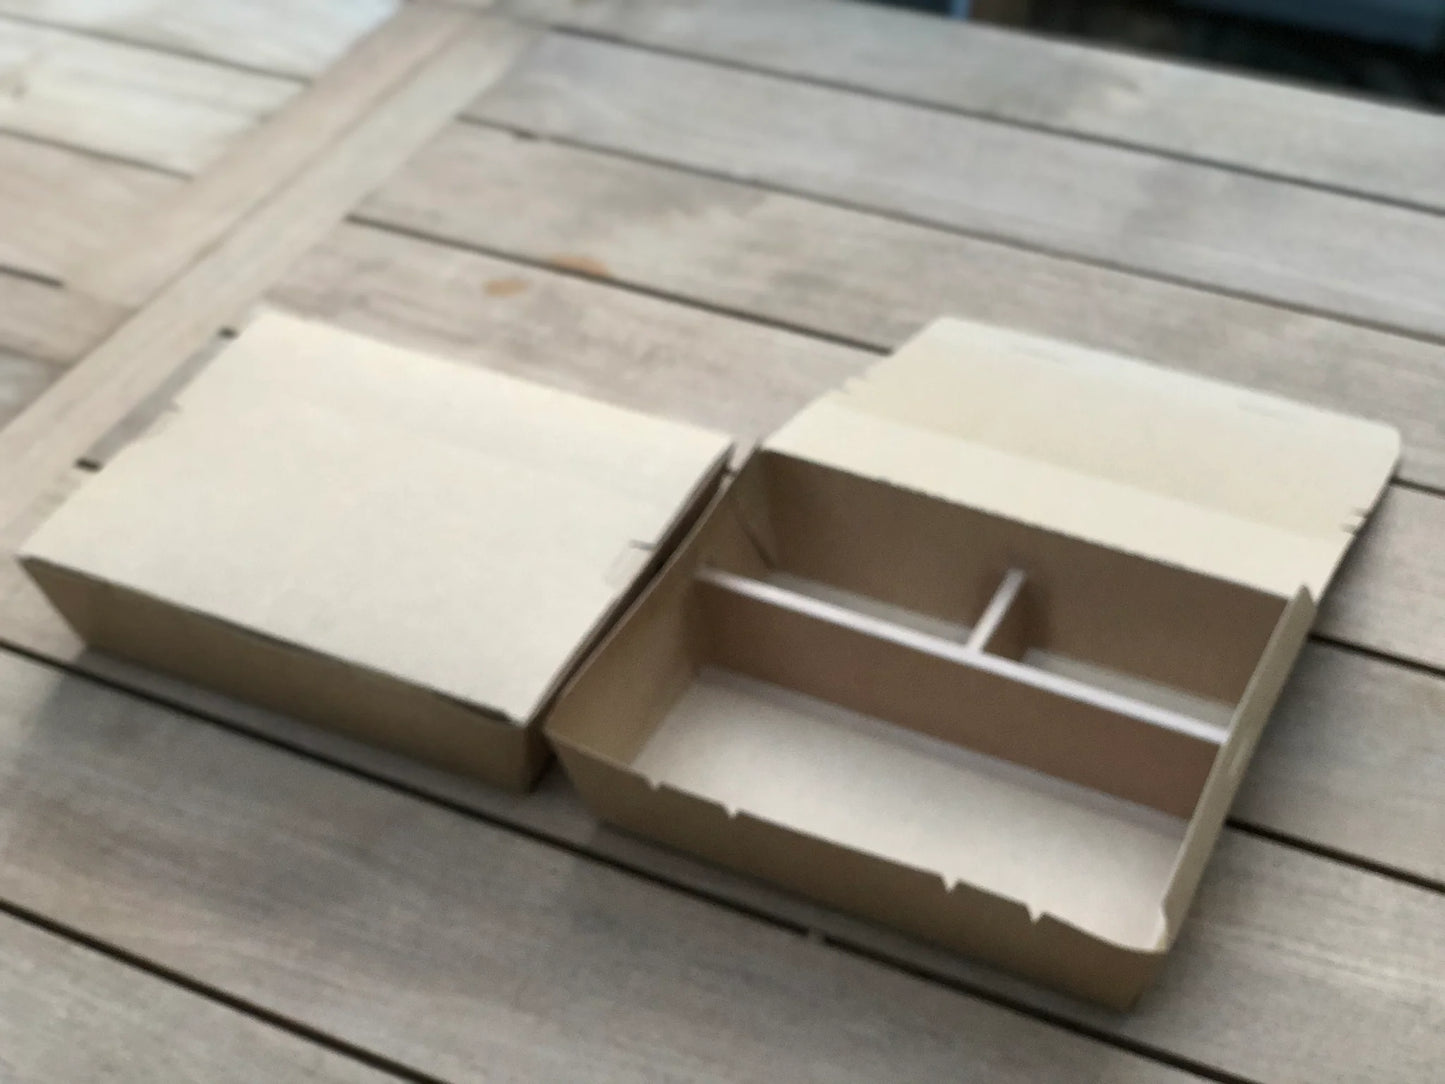 11" x 9" 3 Compartment Bento Box w/ Attached Lid | Paper Board